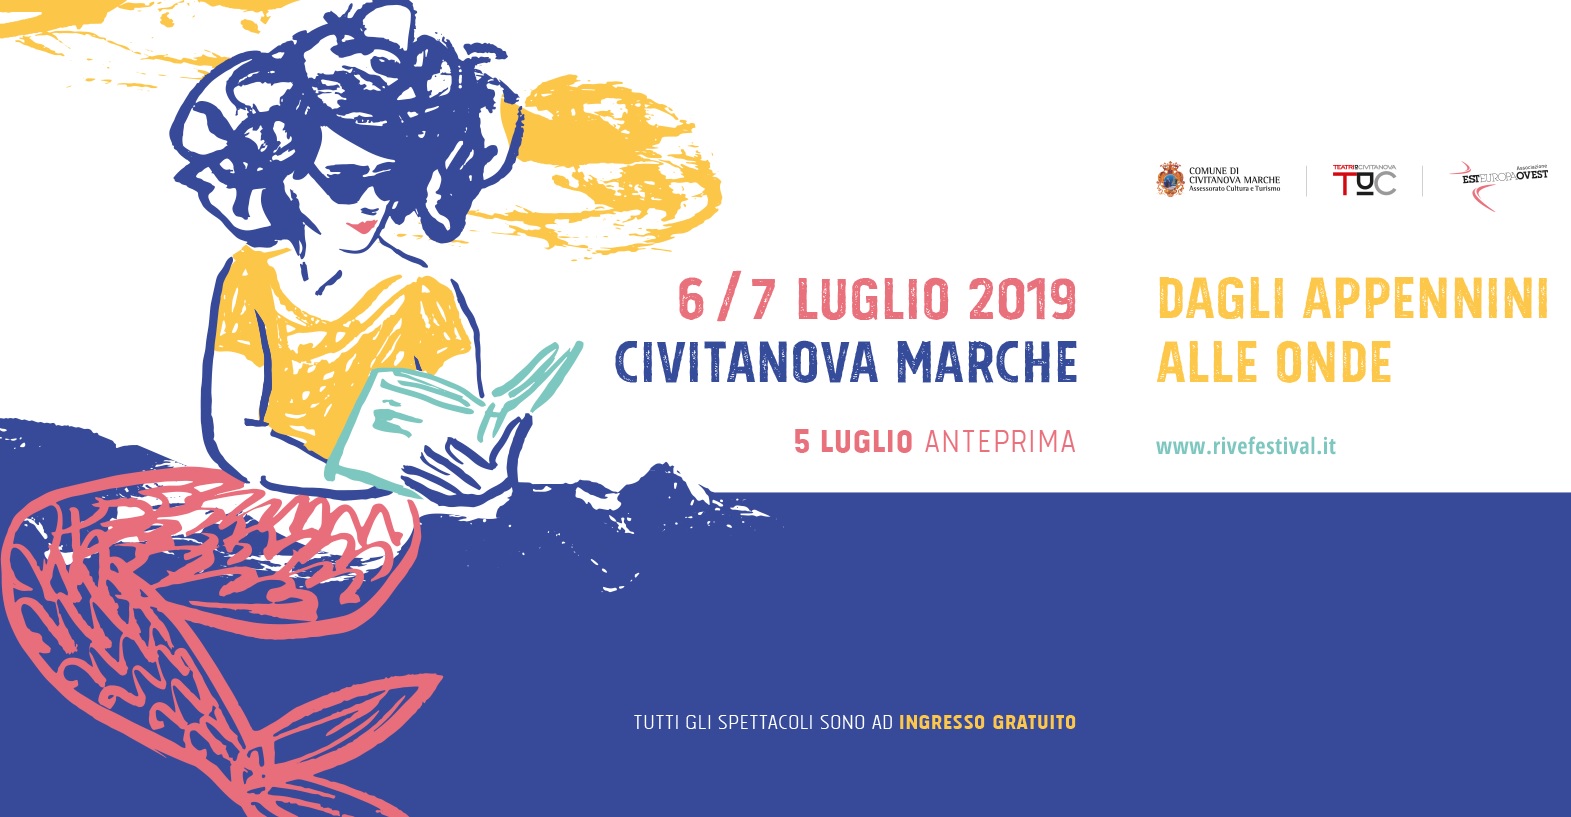 Civitanova Marche, Rive Festival “Dagli Appennini alle onde”